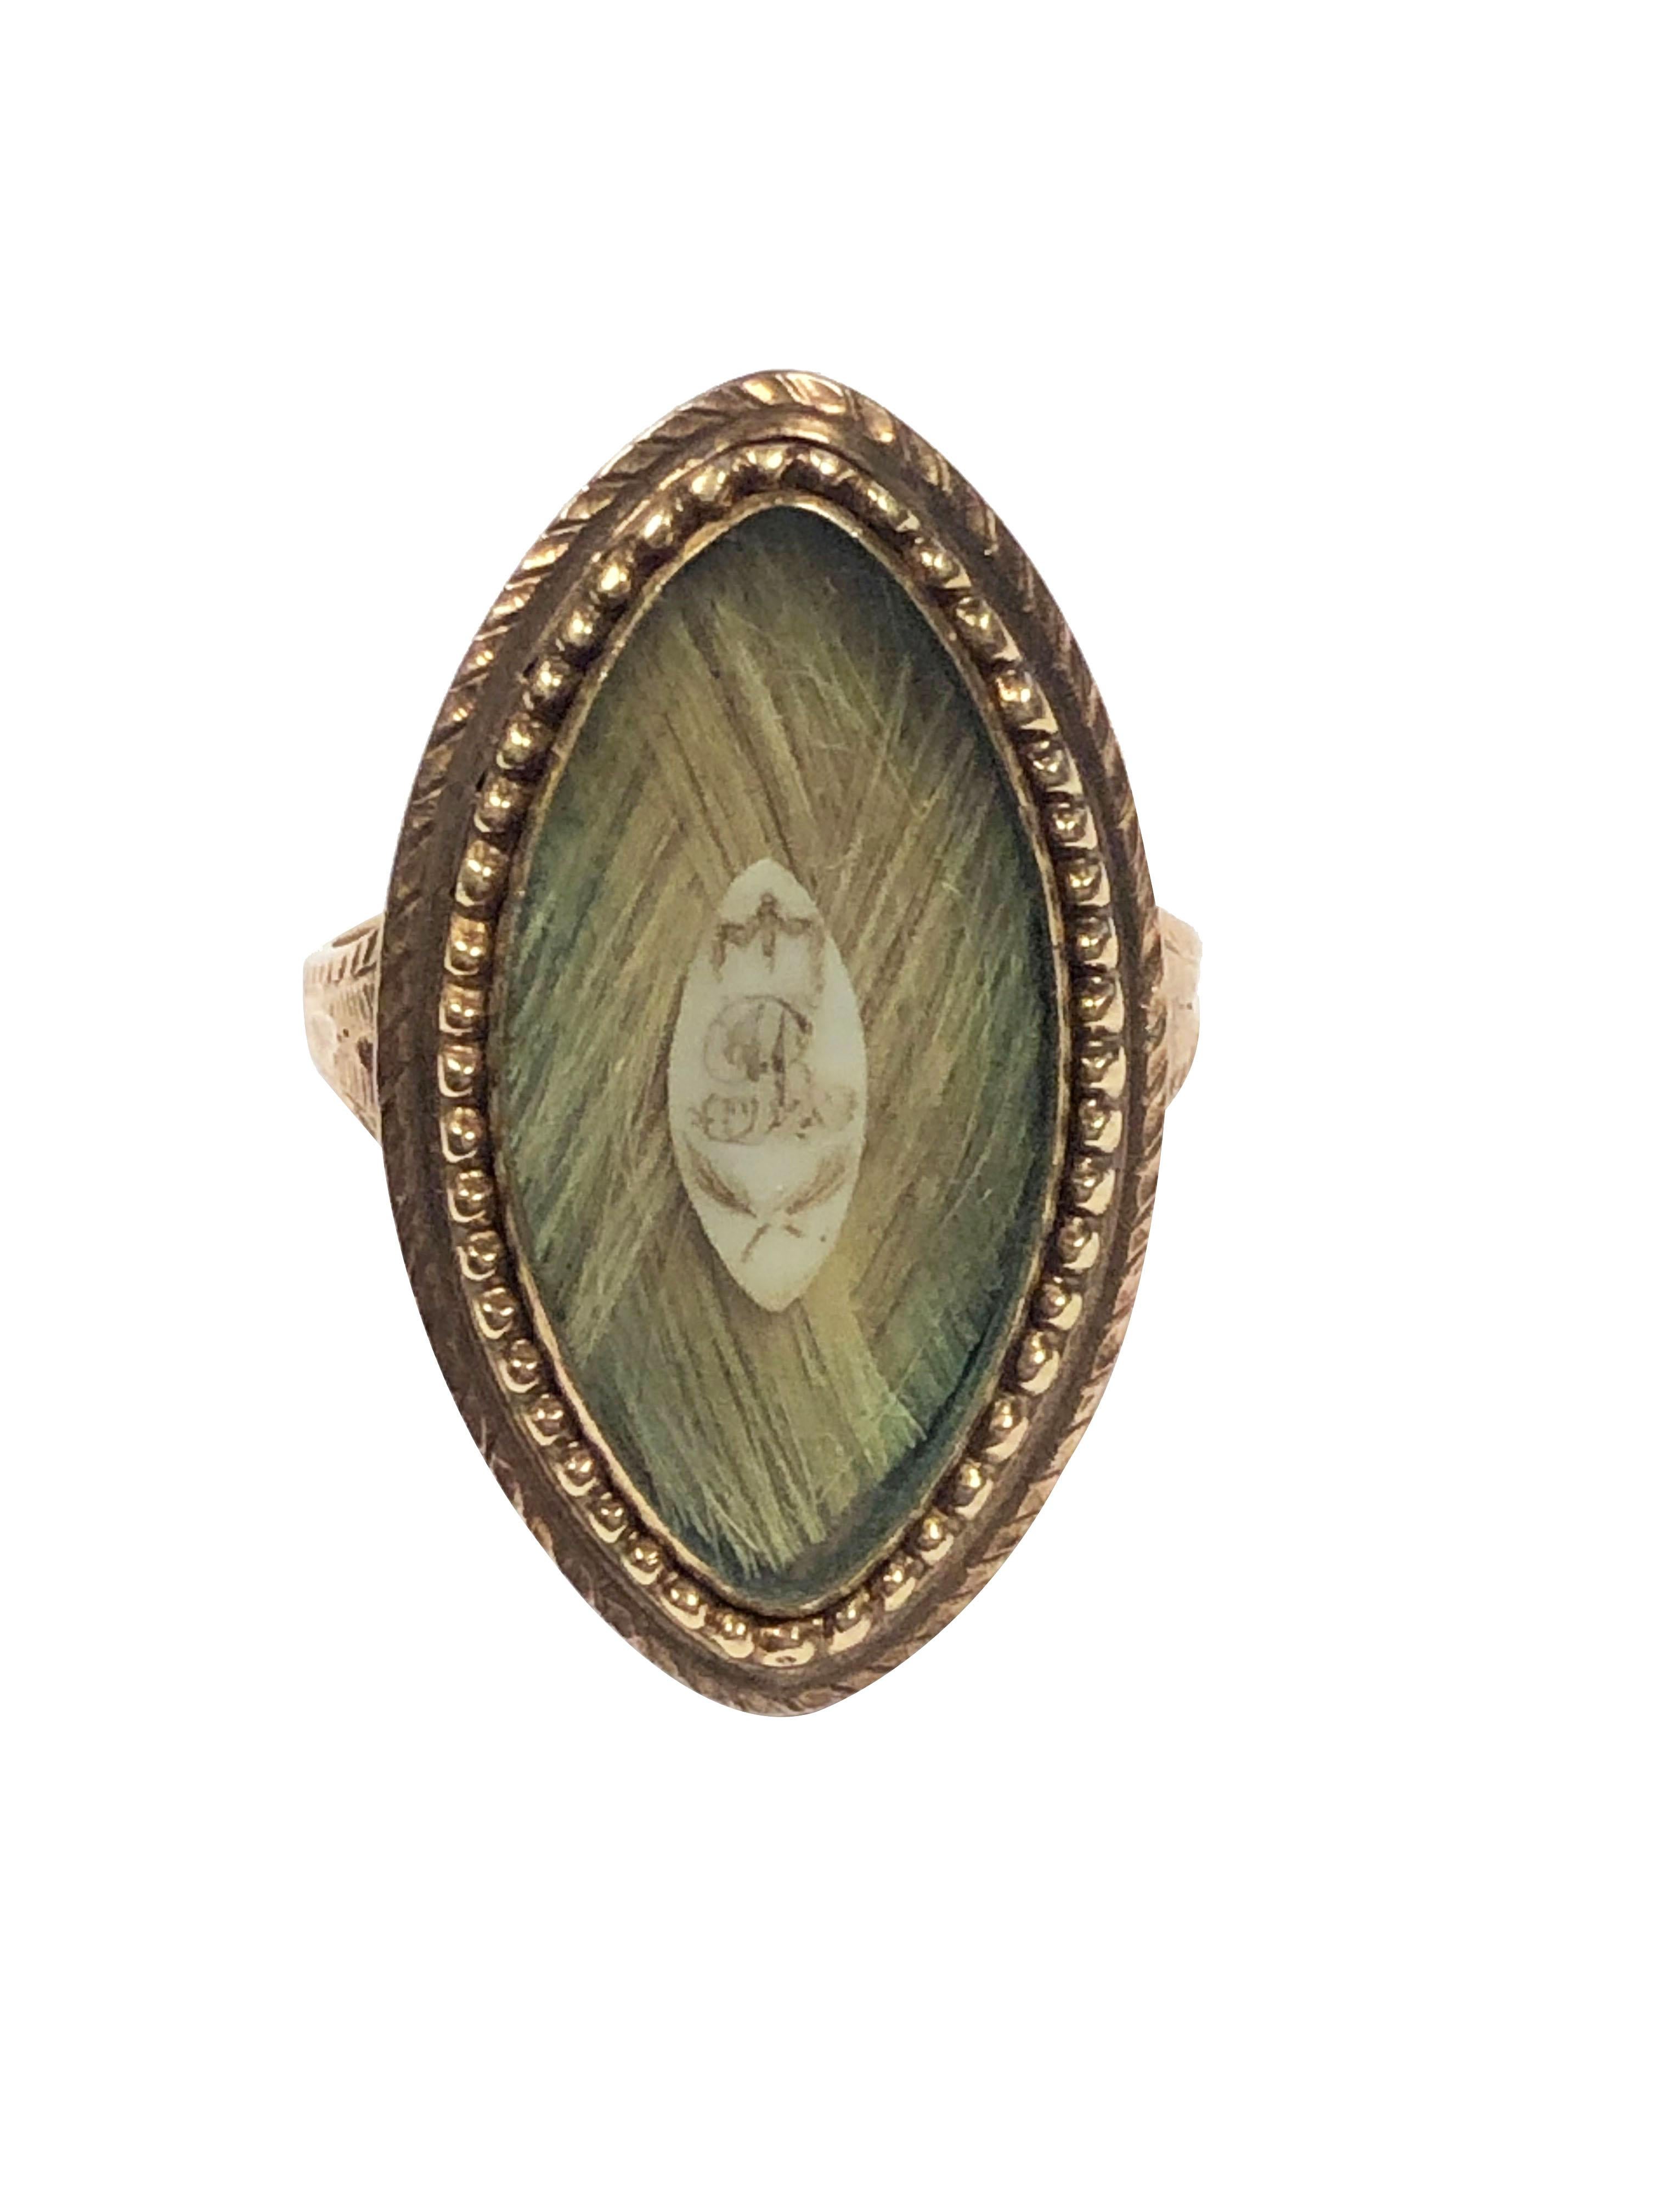 CIRCA 1850 14 - 15k Gelbgold Mourning Memorial Ring, in einer Navette Form Messung 1 1/8 Zoll in der Länge X 5/8 Zoll breit, helle Farbe gewebt Haar mit einer zentralen Plakette mit dem Buchstaben 